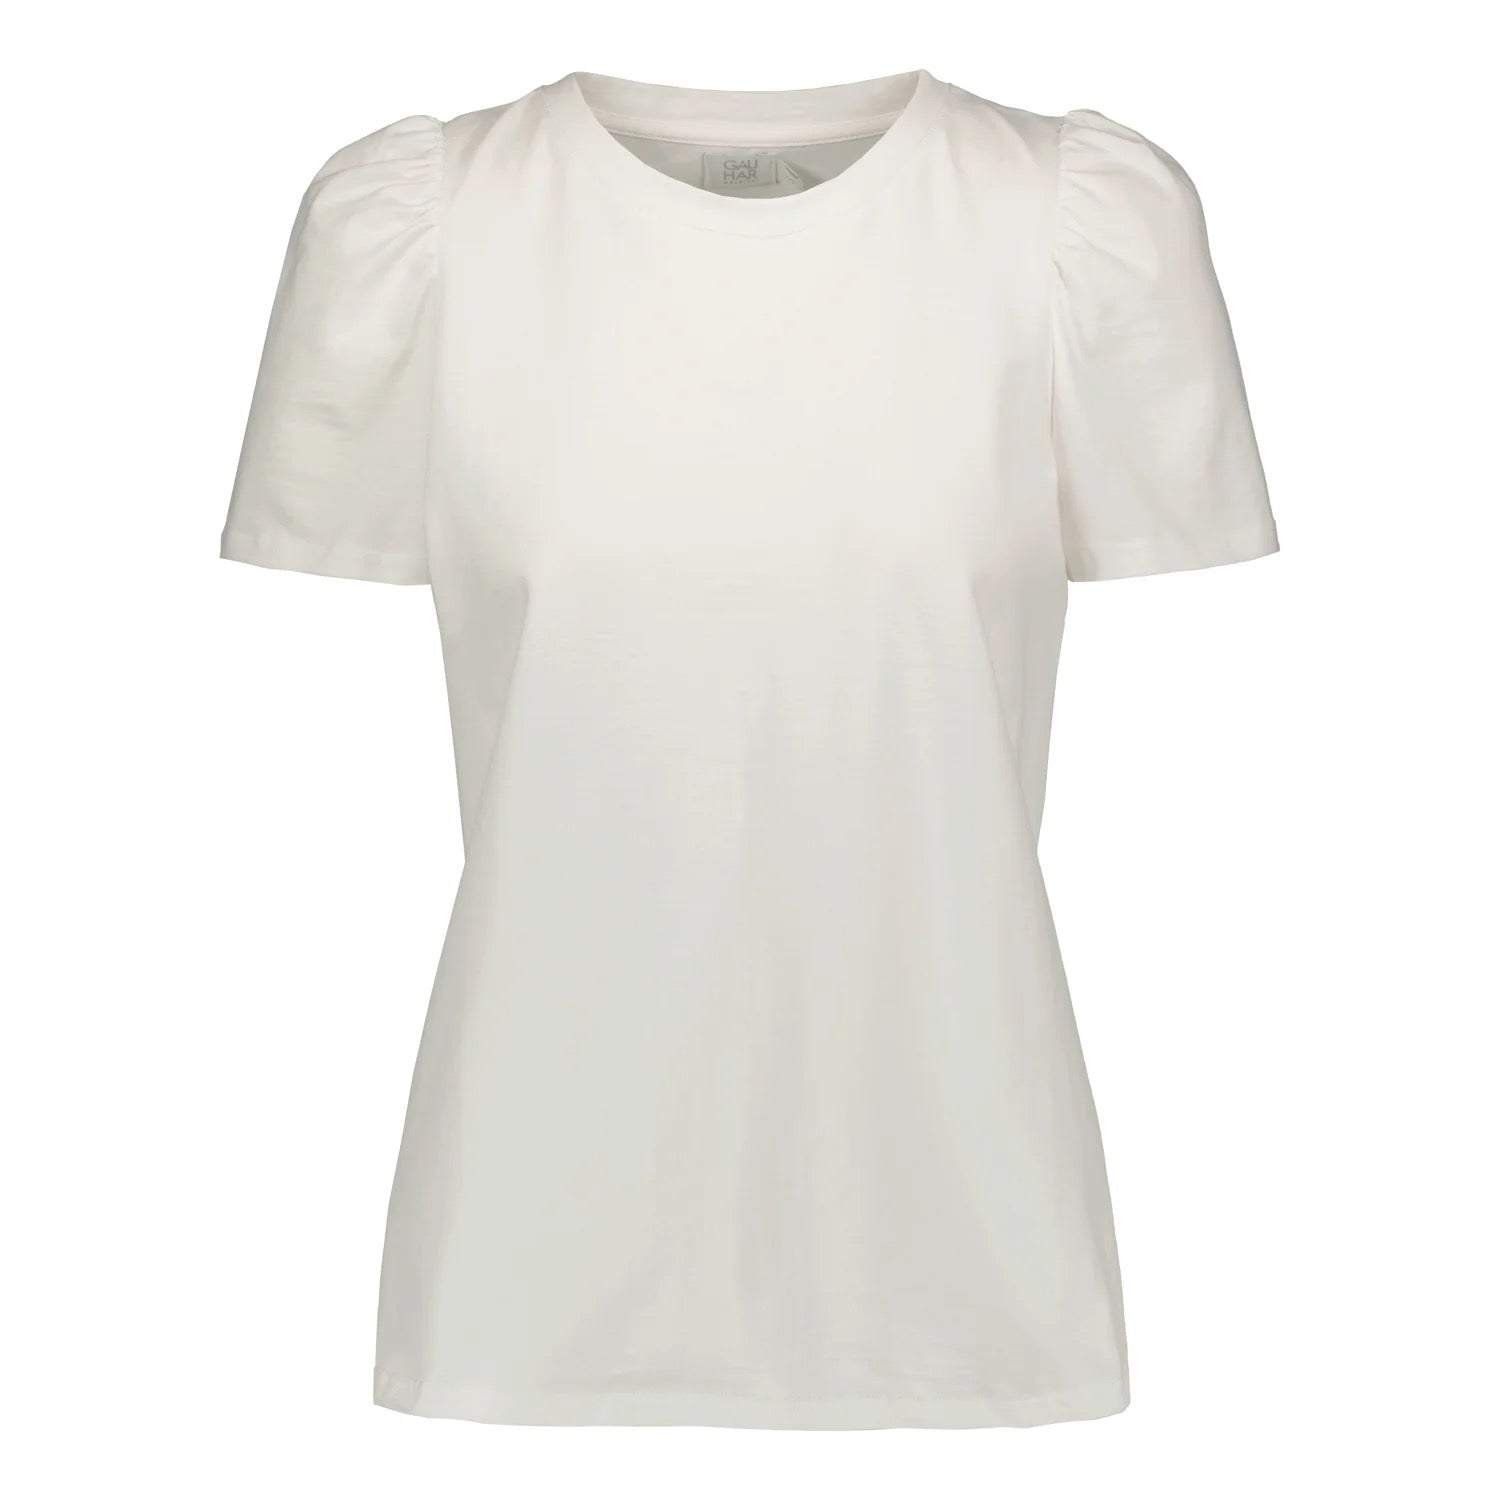 Valkoinen t-paita puhvihihat